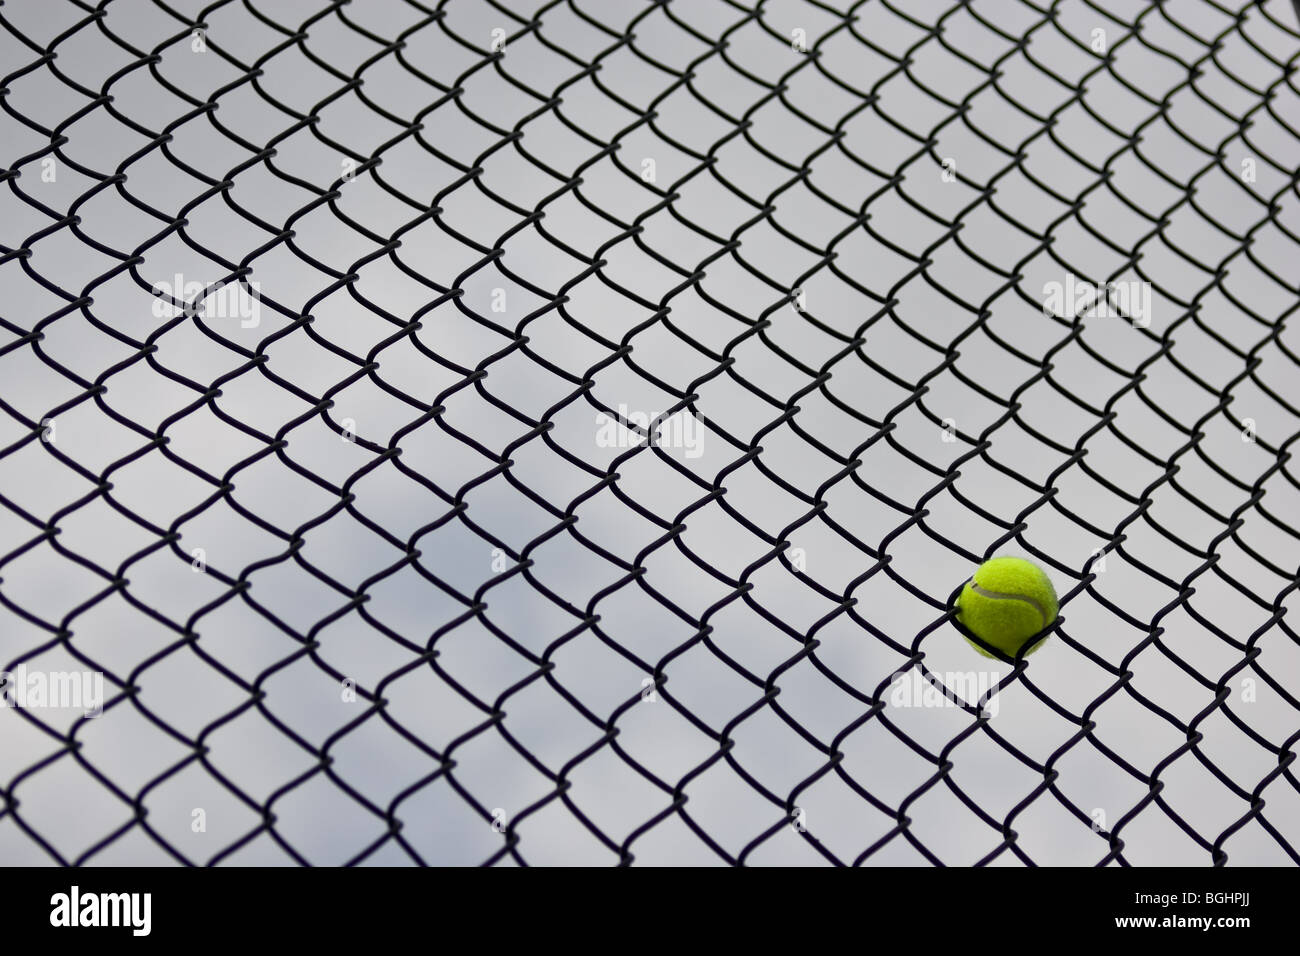 Une seule balle de tennis coincé dans la clôture à un court de tennis, avec un ciel couvert à l'arrière. Banque D'Images